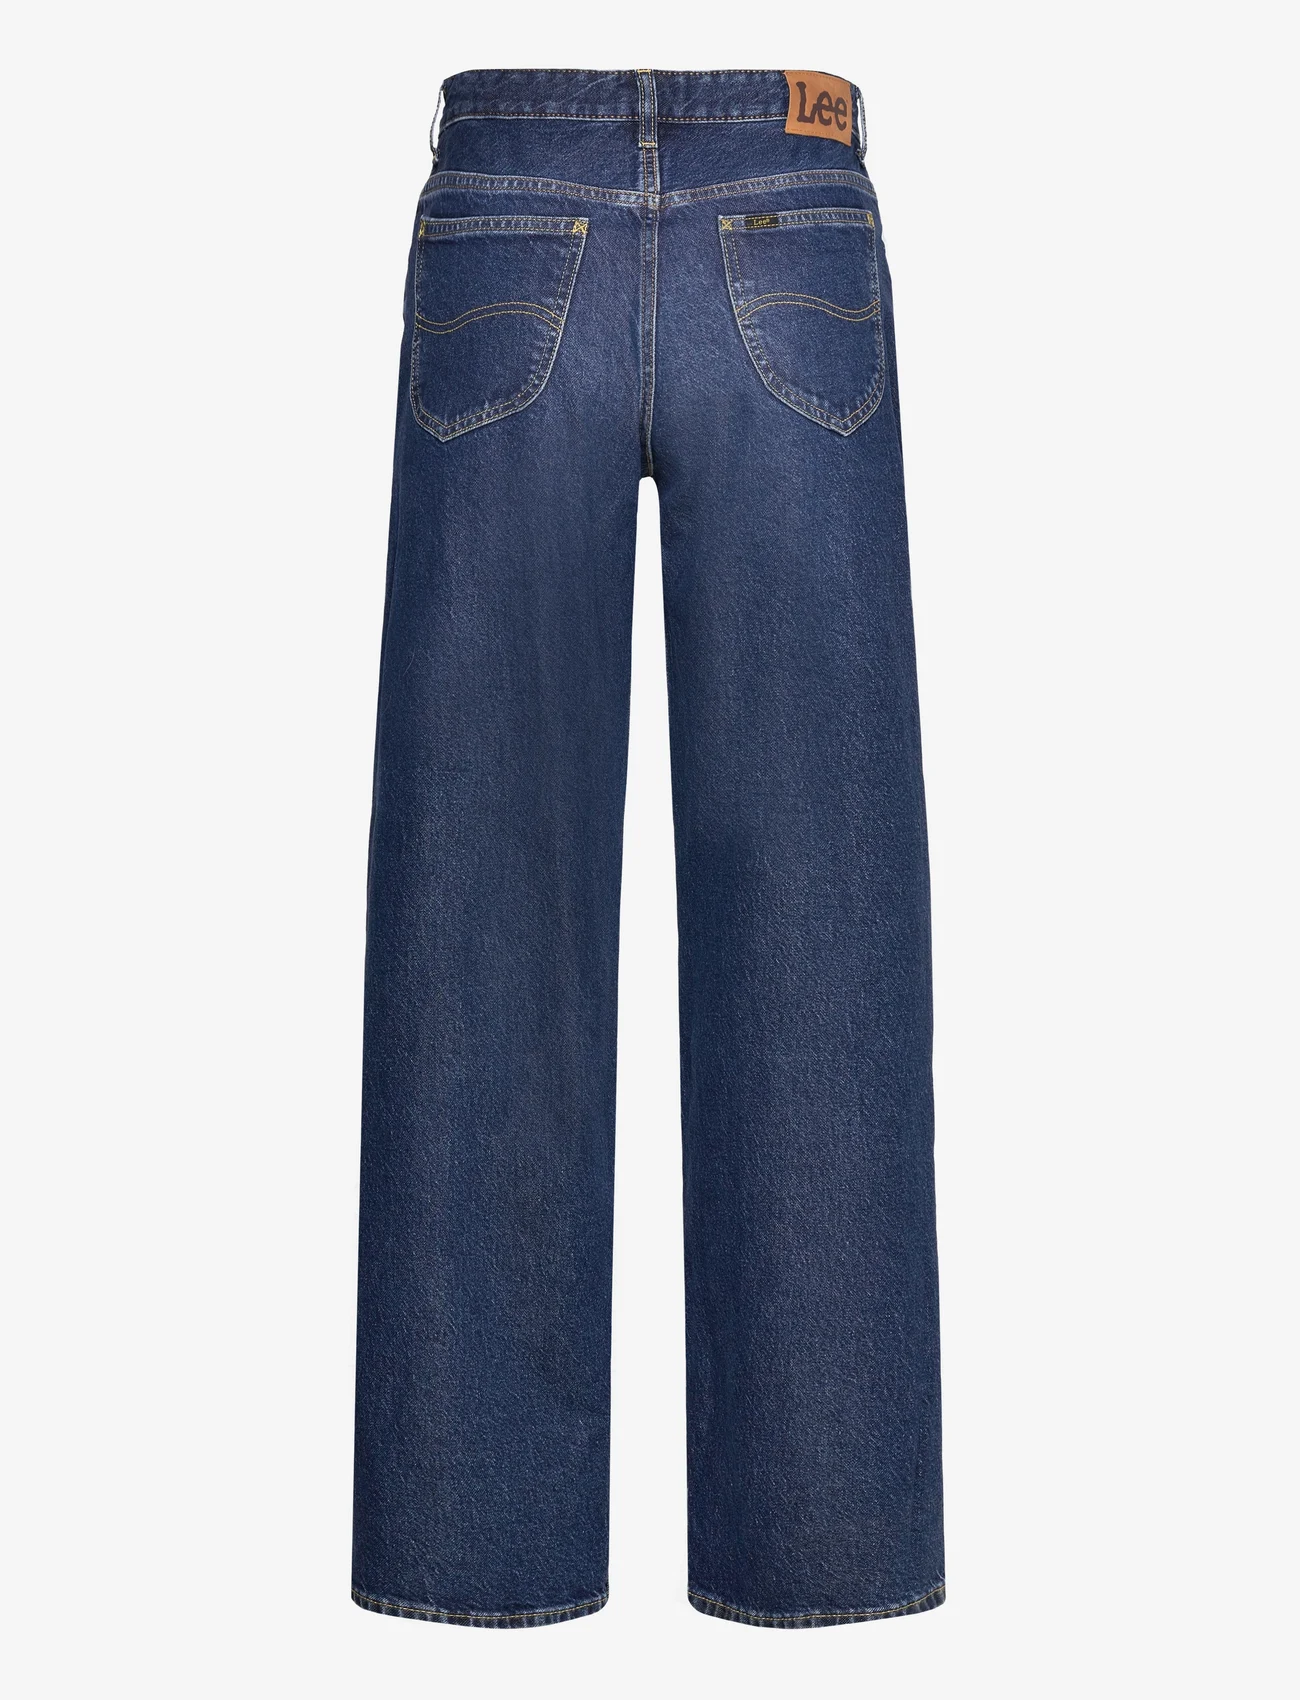 Lee Jeans - RIDER LOOSE - tiesaus kirpimo džinsai - blue nostalgia - 1